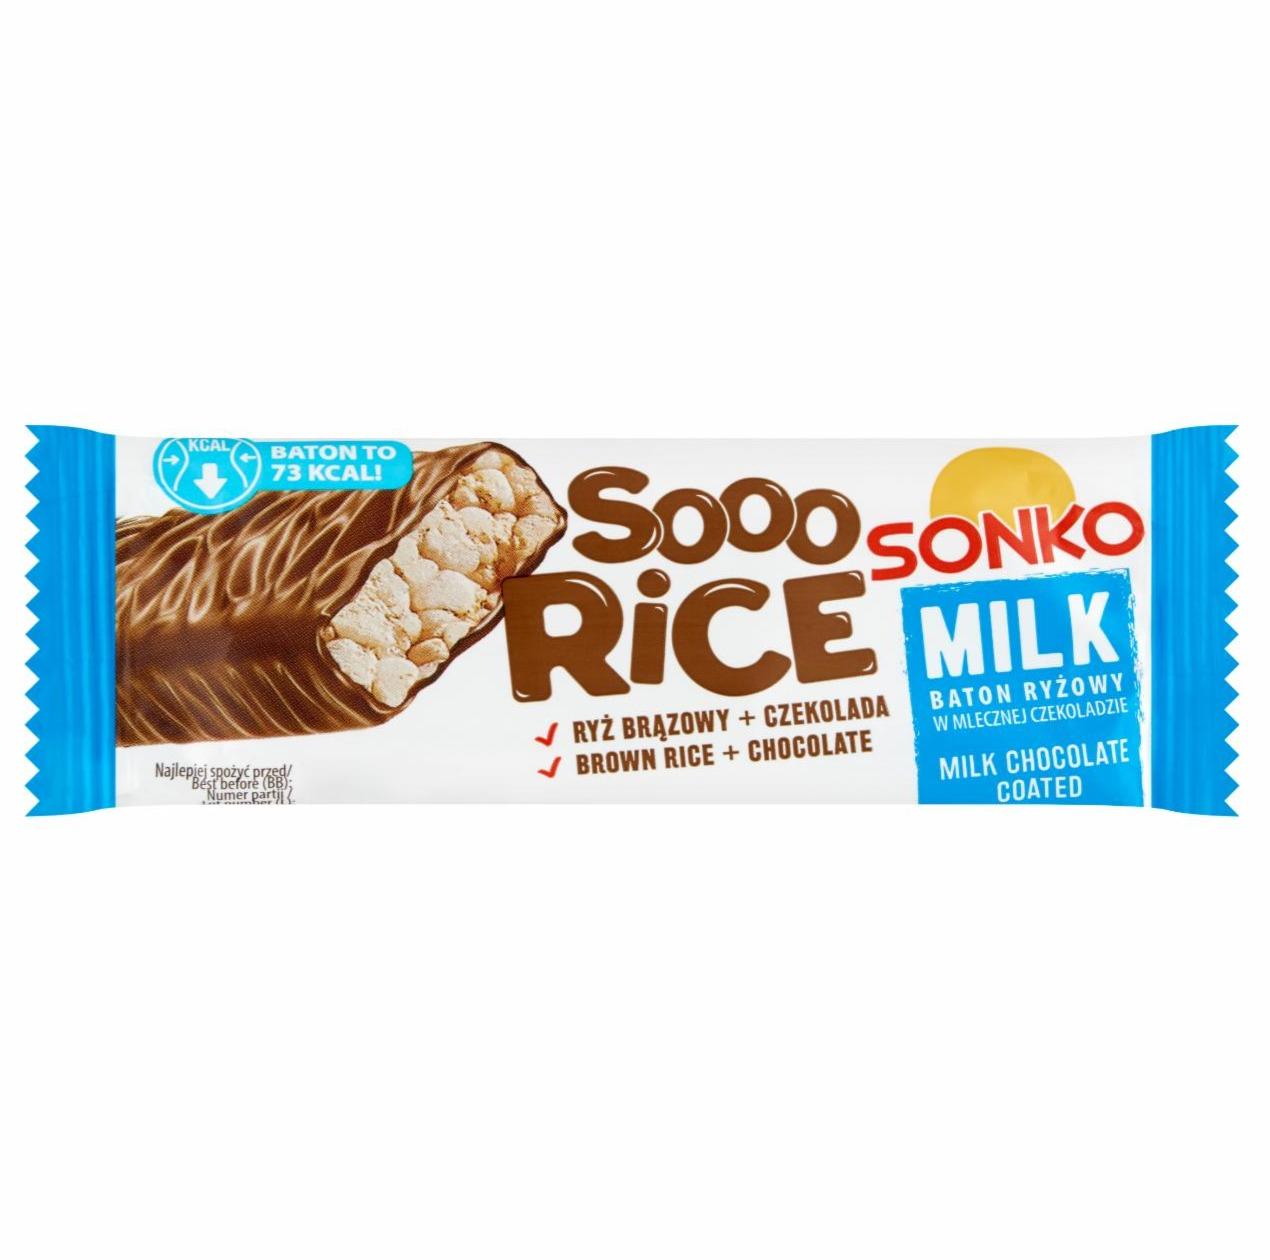 Zdjęcia - Sonko Sooo Rice Milk Baton ryżowy w mlecznej czekoladzie 16 g